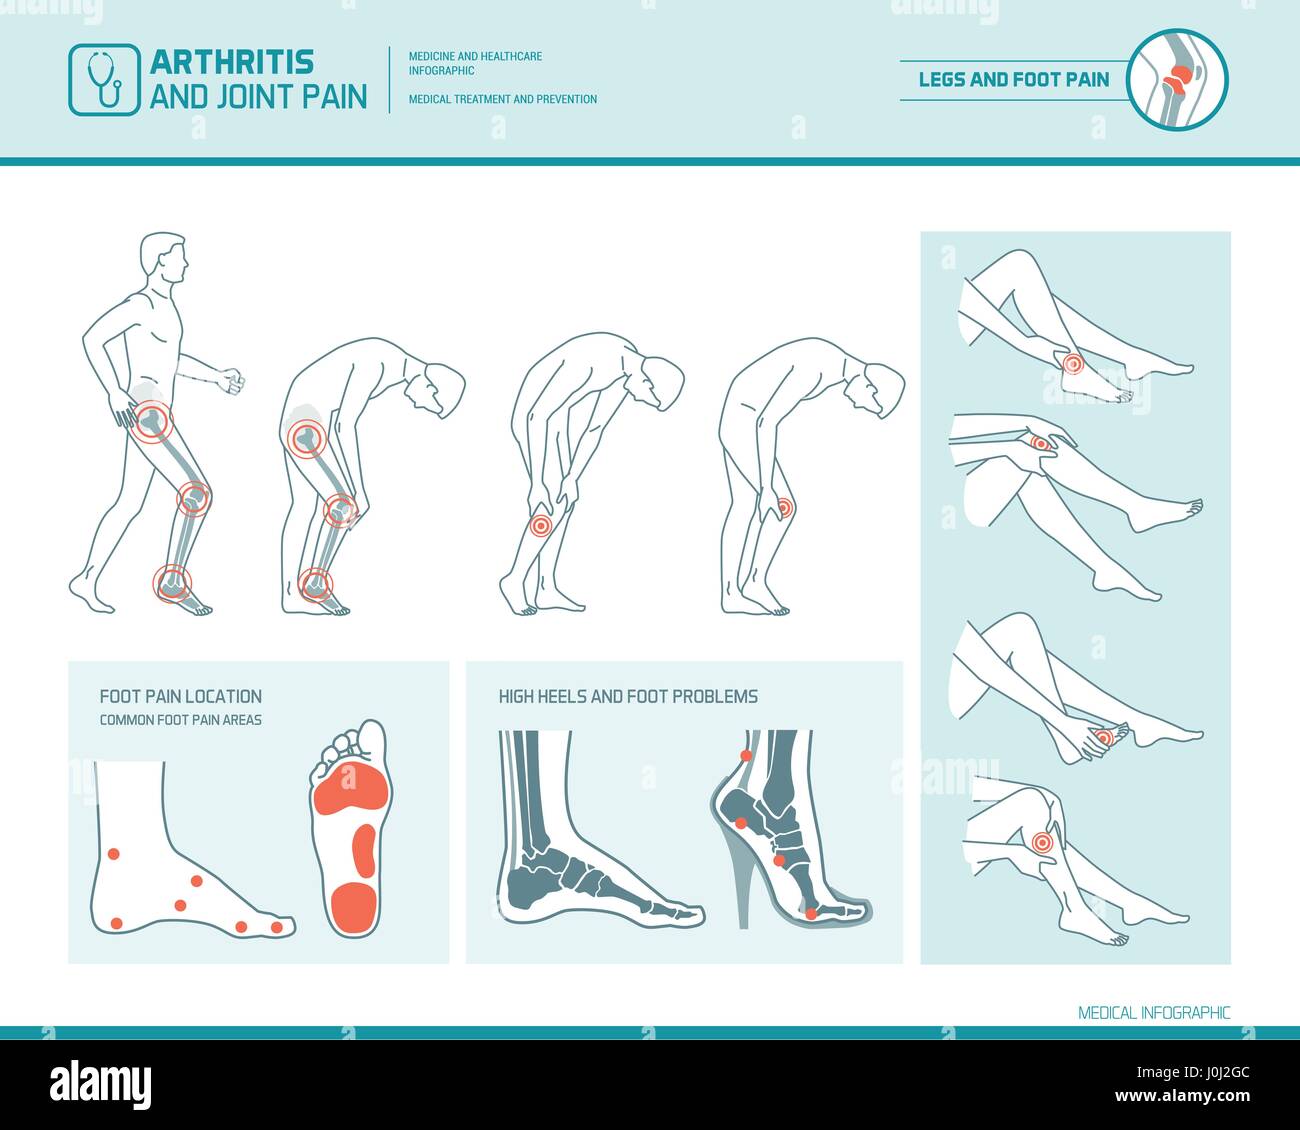 Fußschmerzen, Bein Schmerzen und Arthritis Infografik: Entzündung Spots, Schmerzregionen und Highheels Schaden Stock Vektor